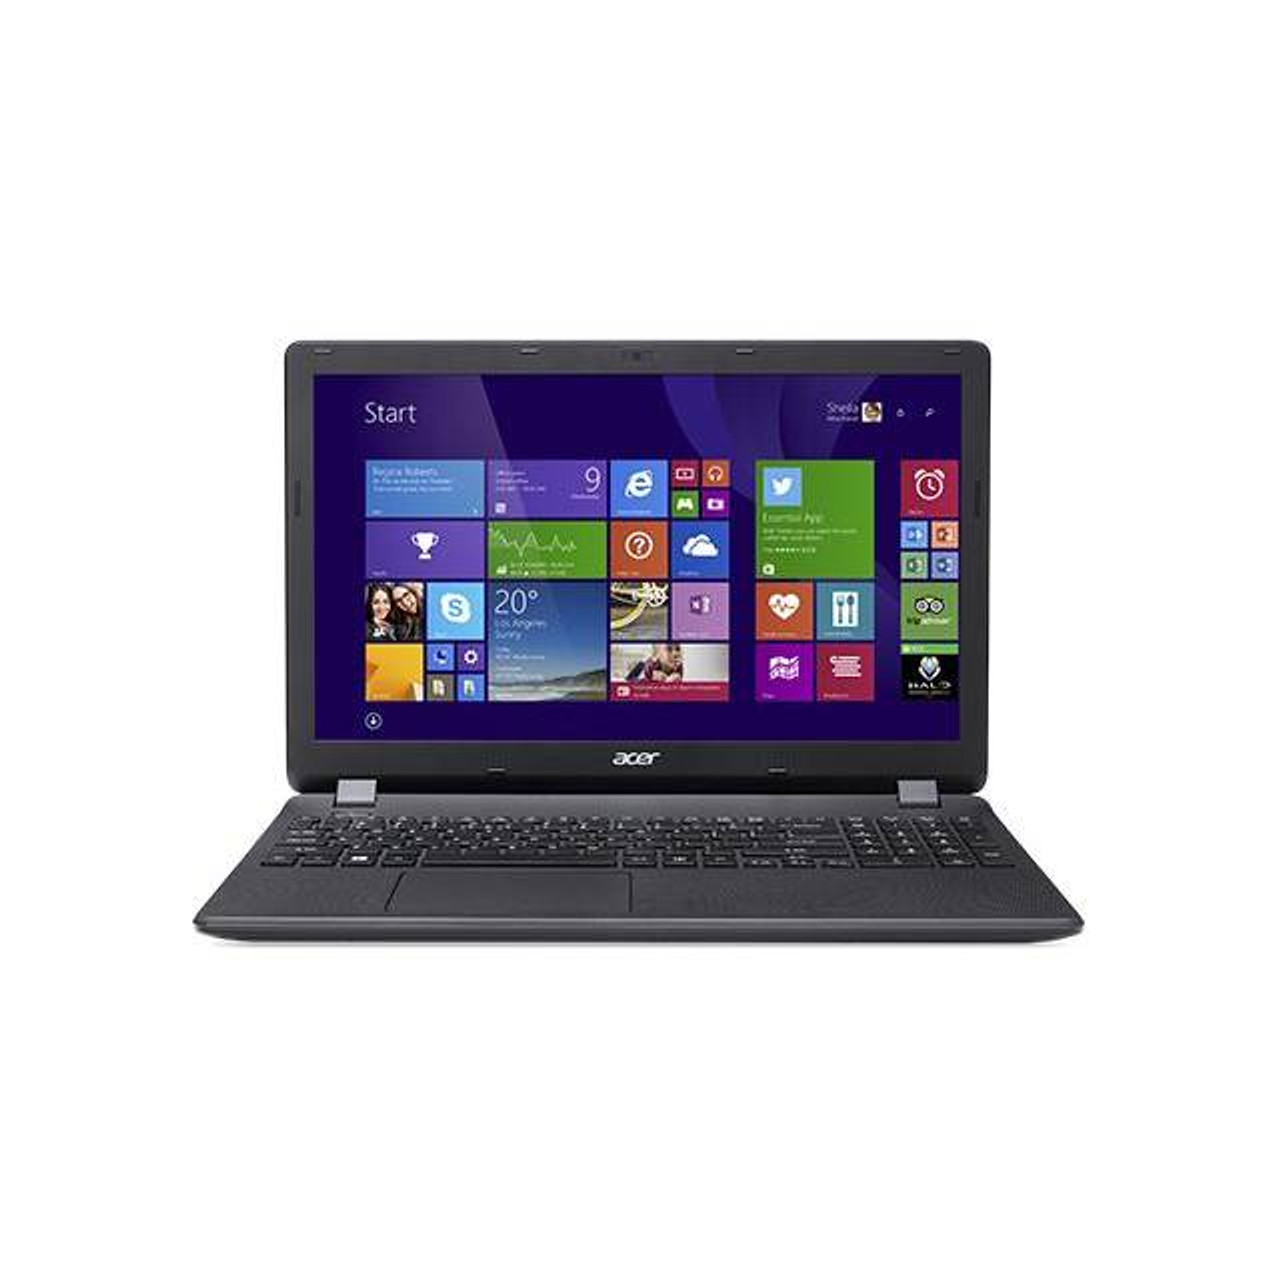 Acer Aspire ES ES1-571-C7N9 15.6 inch Intel Celeron 2957U 1.4GHz/ 4GB DDR3L/ 500GB HDD/ USB3.0/ Windows 10 Home Notebook (Black)